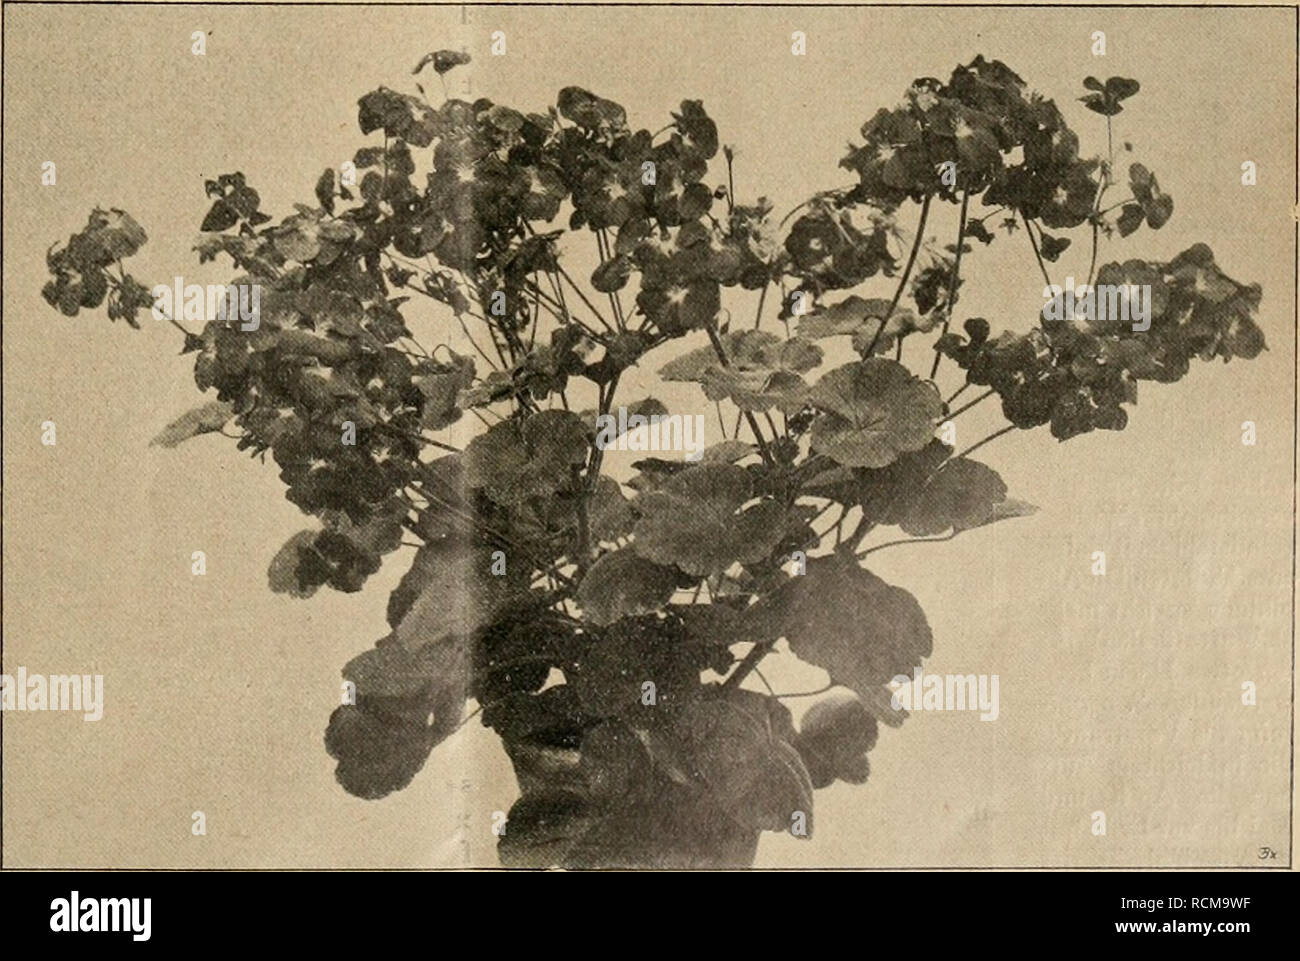 Die Gartenwelt. Le jardinage. Pelargonium Juno. Der rechte Blütenstand hat  nach dem Abfallen Blütentriebe Blüten der neue und bildet erzeugt eine  effet zusammengesetzte Dolde. Euh gutgebaute Pflanzen zu erzielen, dem  Endspitzen